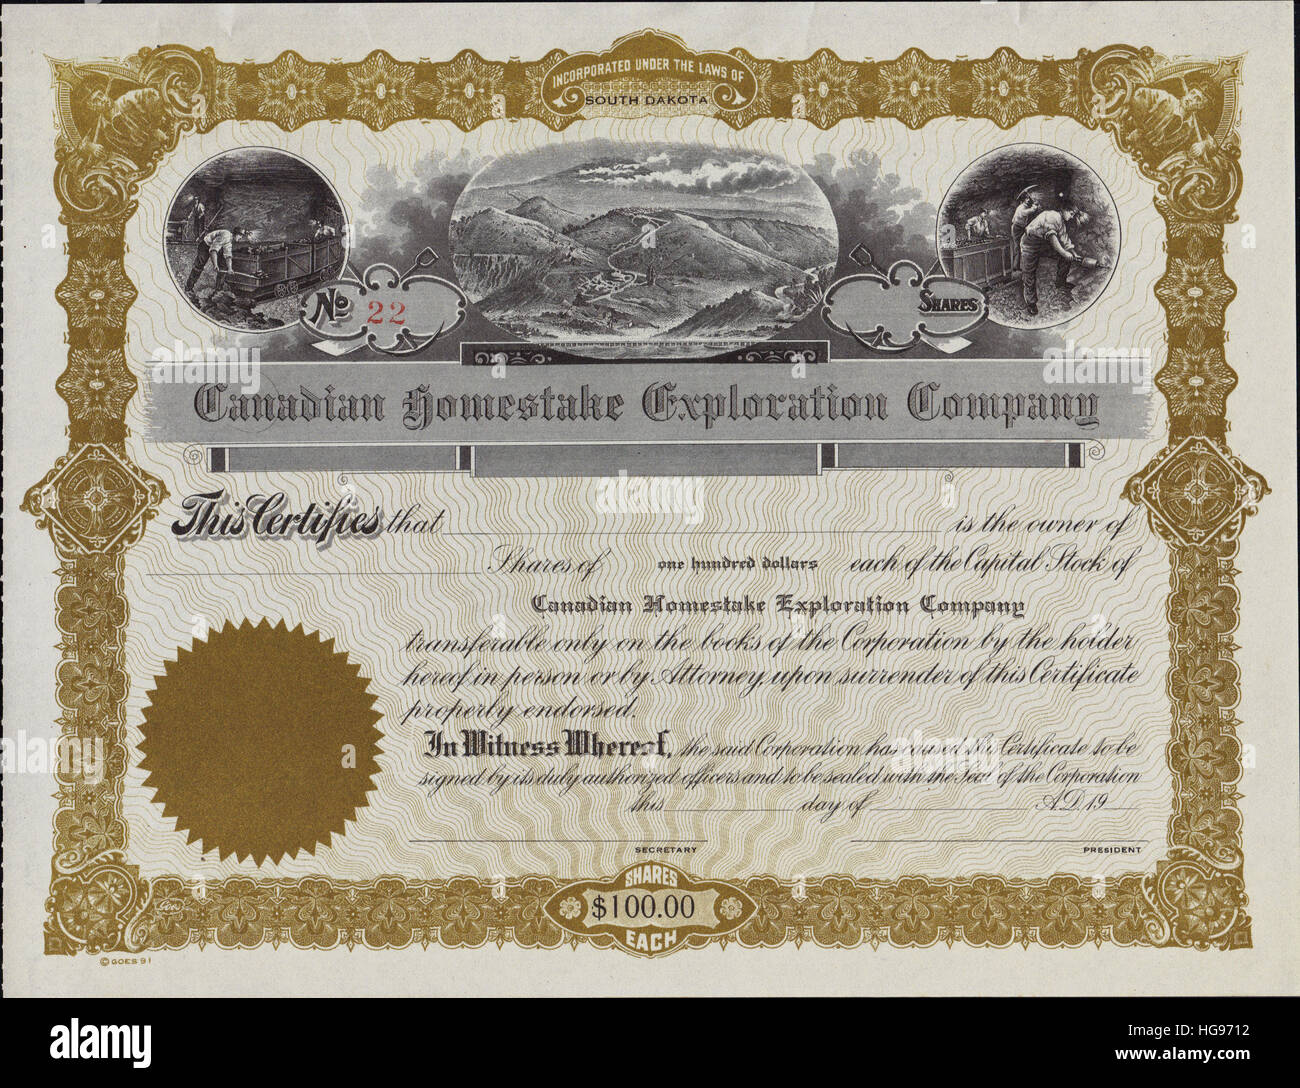 A principios de 1900 Canadian Homestake Exploration Company - Certificados Bursátiles constituidas en Dakota del Sur Foto de stock